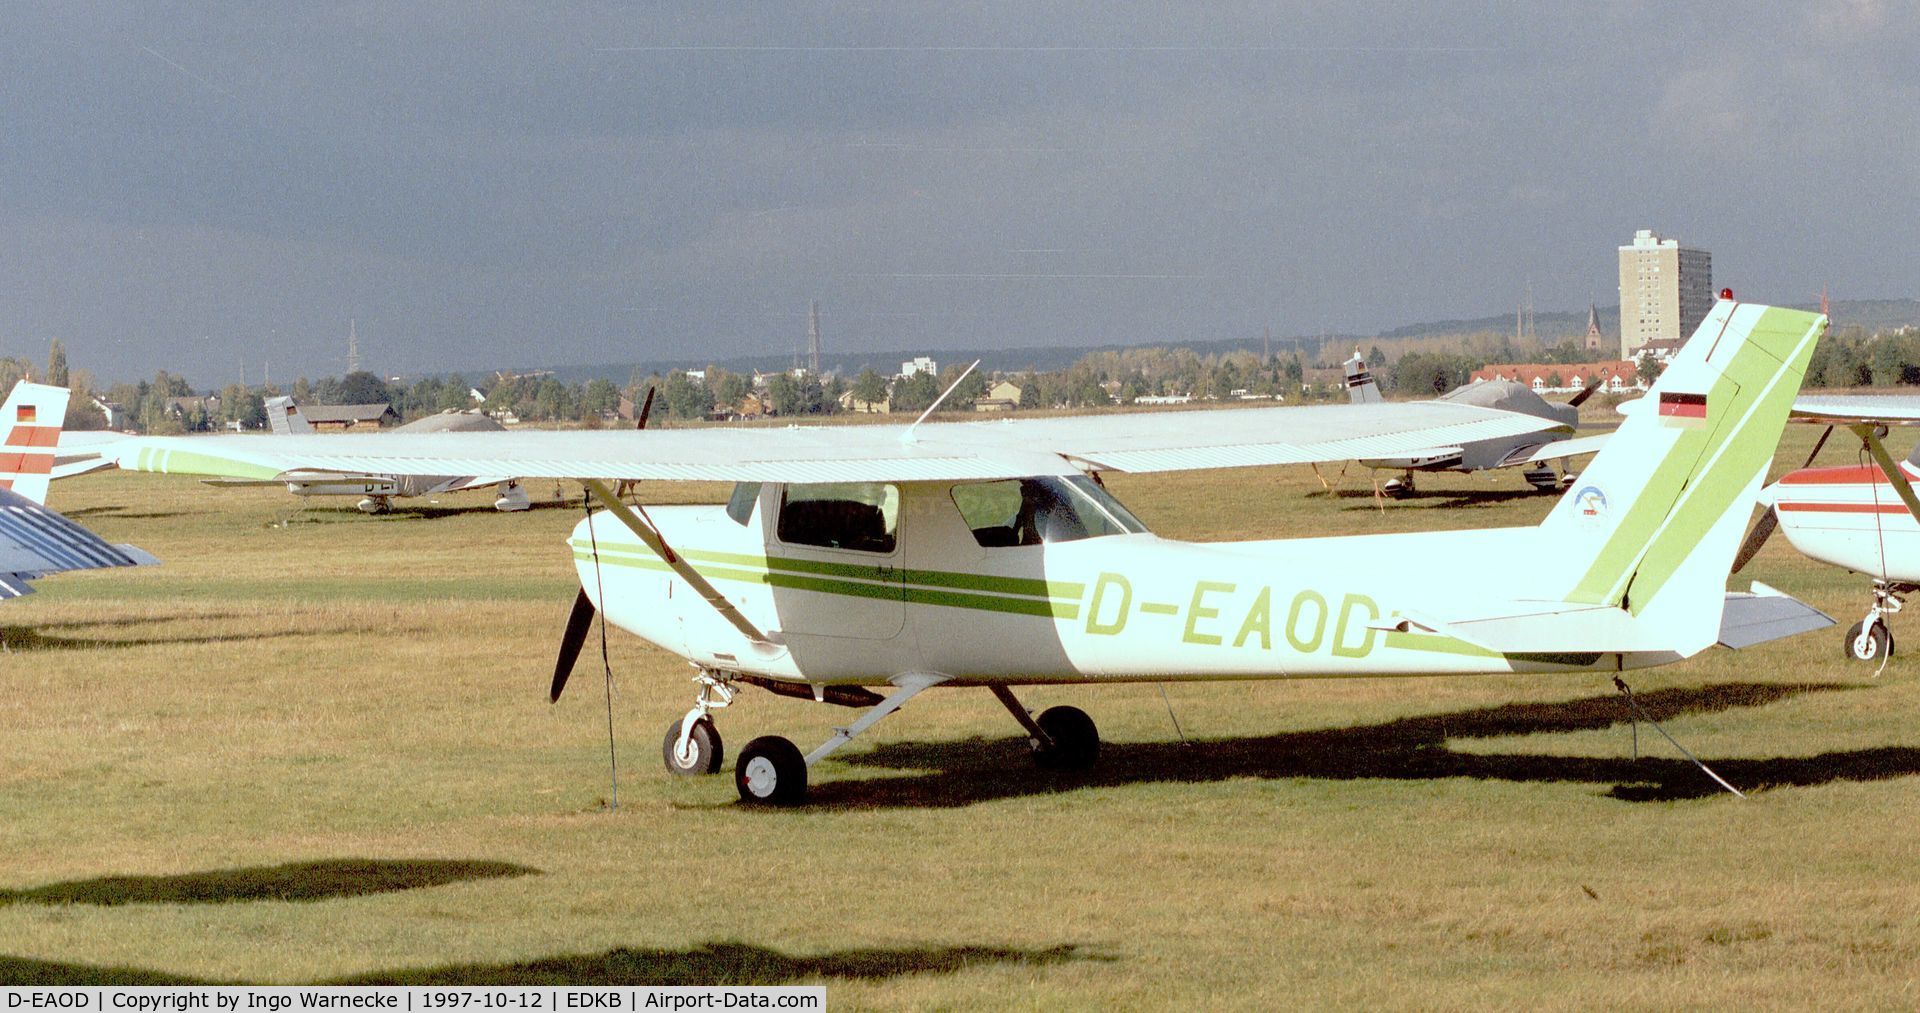 D-EAOD, Reims F152 C/N 1910, Cessna (Reims) F152 at Bonn-Hangelar airfield